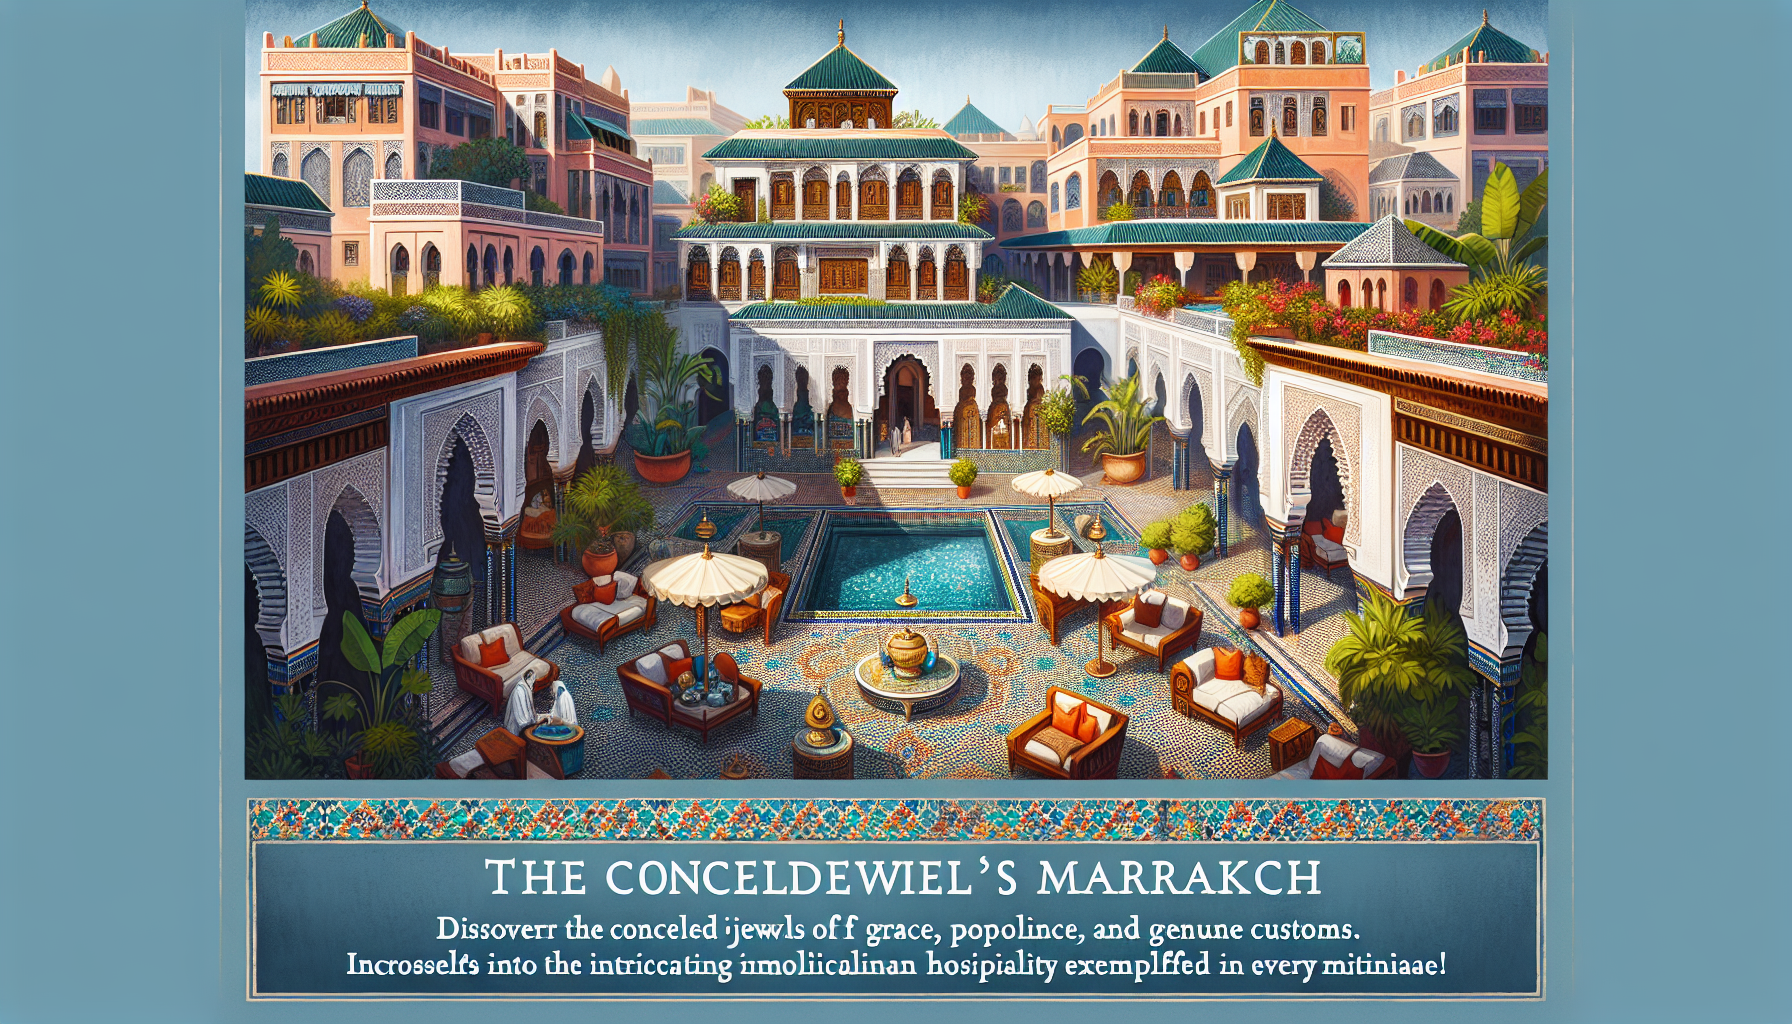 découvrez les secrets cachés des riads de marrakech : laissez-vous séduire par leur charme, leur luxe et leurs traditions authentiques.